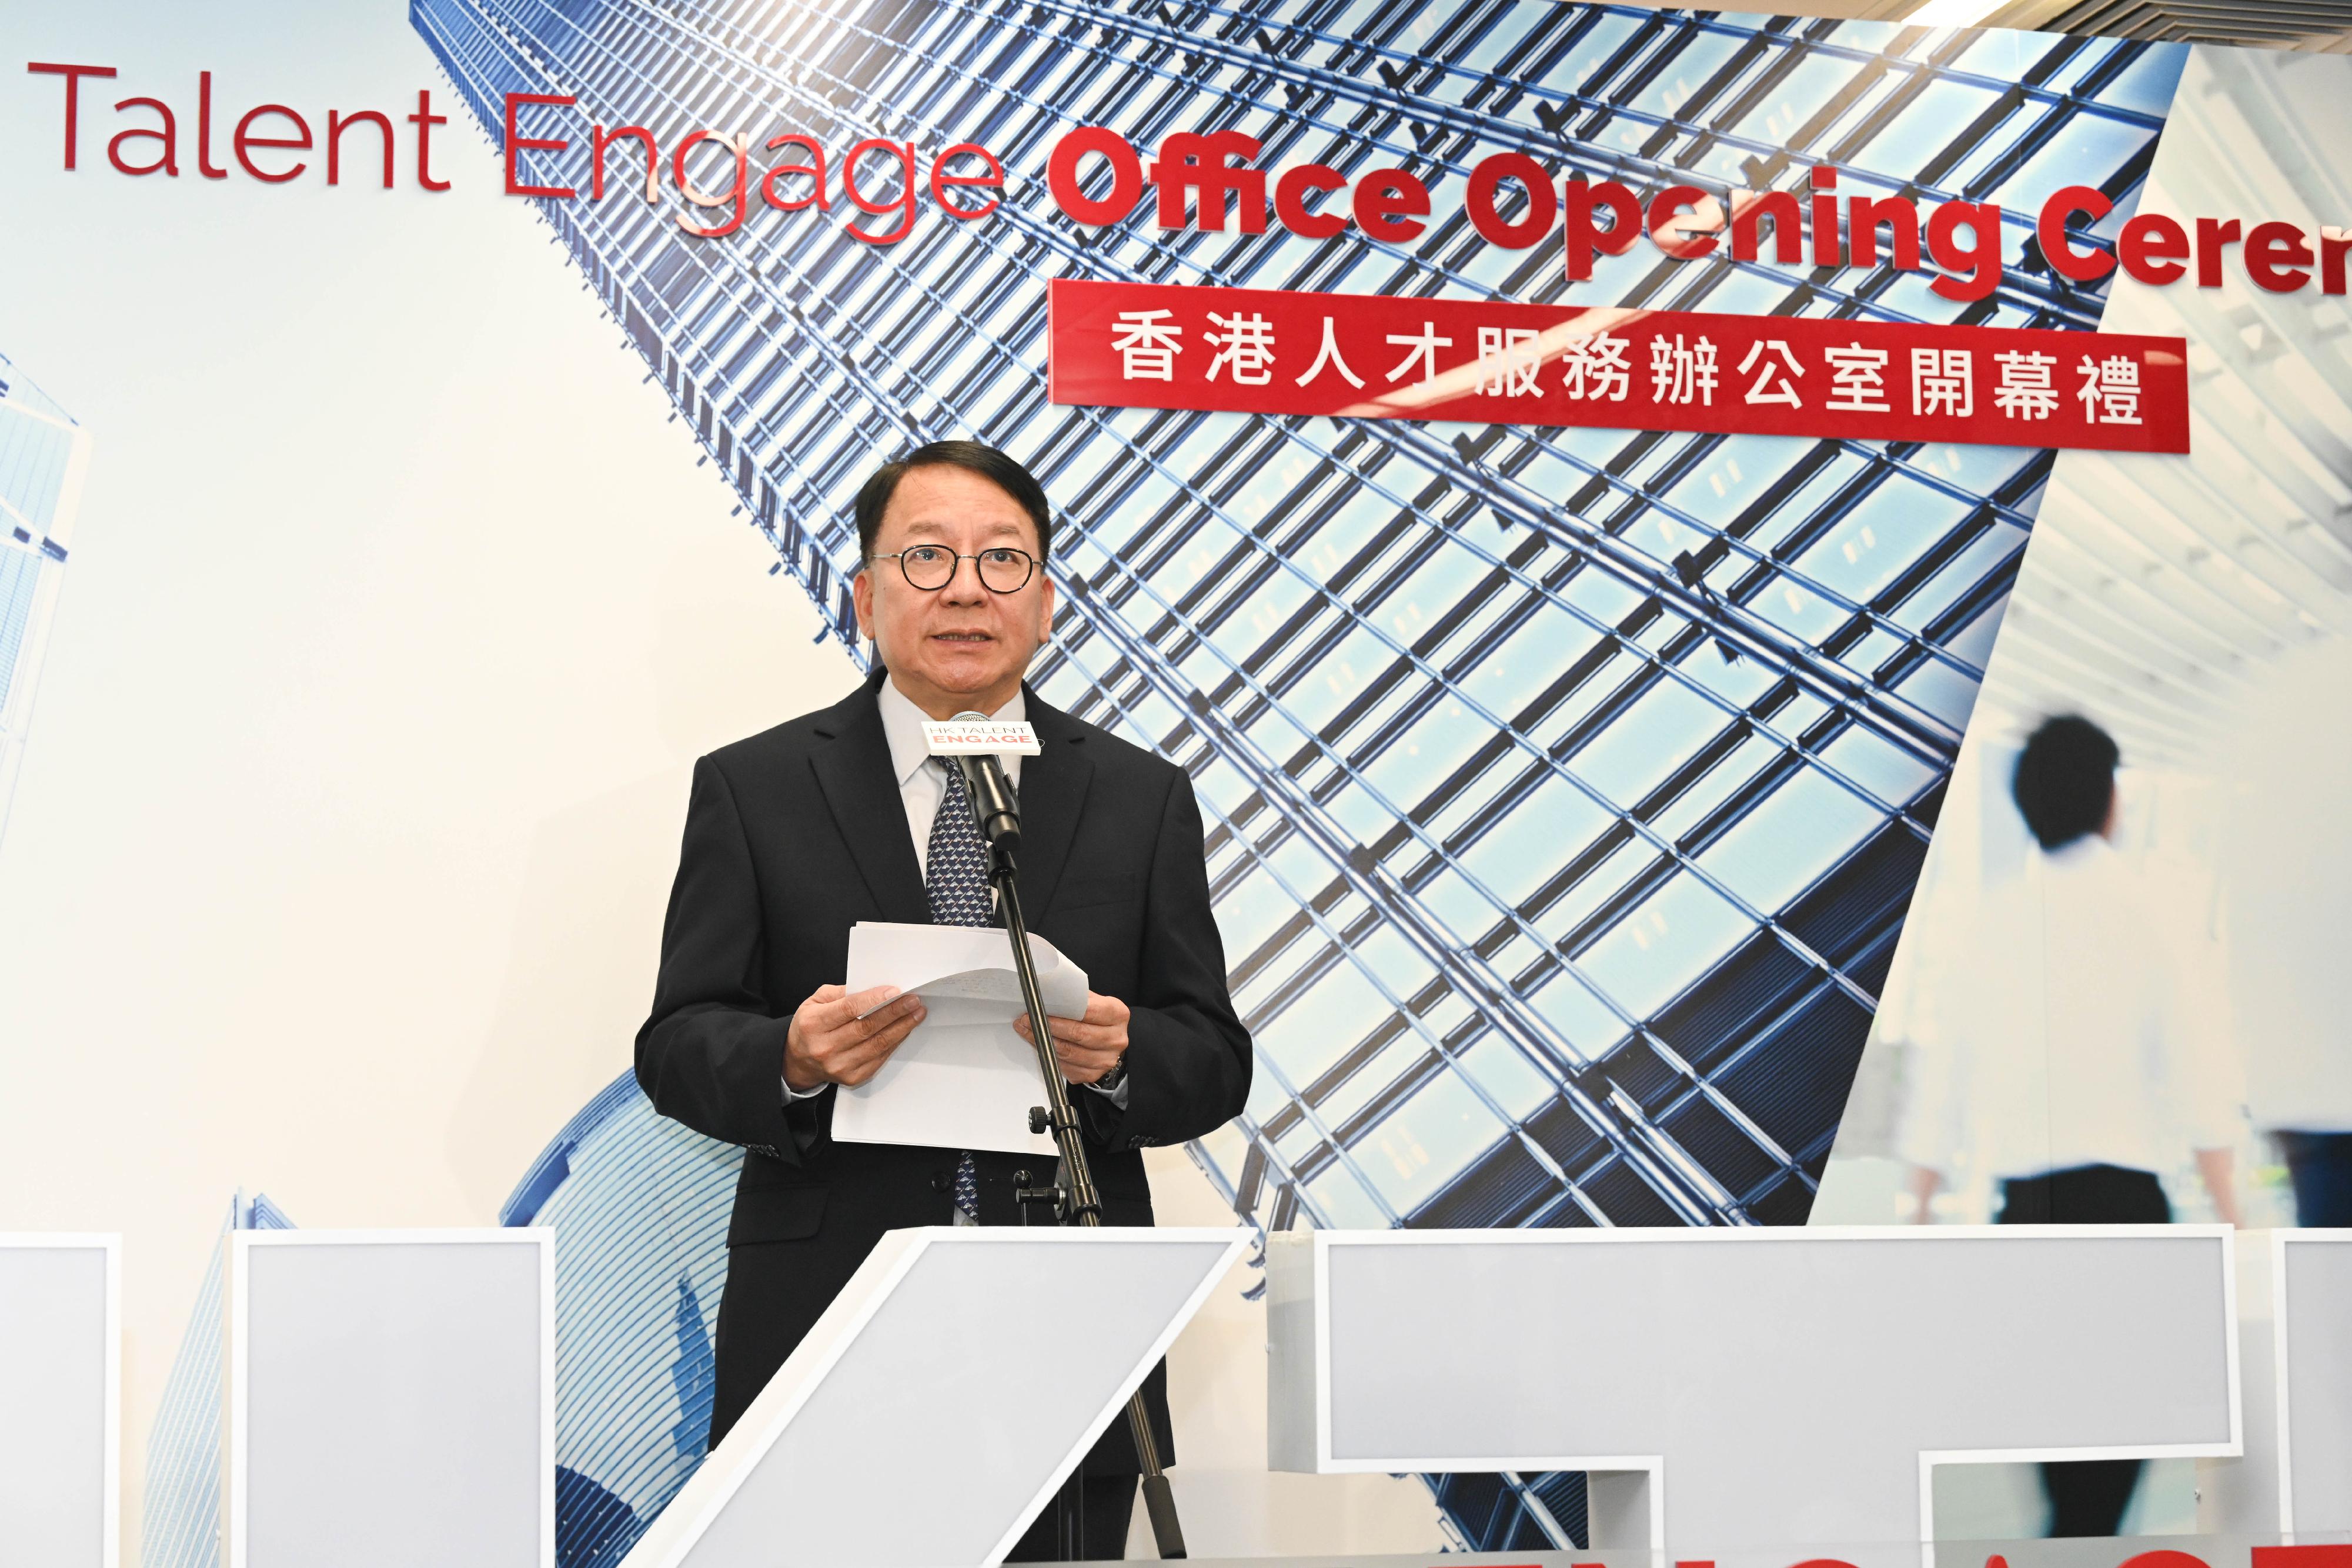 政务司司长陈国基今日（十月三十日）主持「香港人才服务办公室」开幕礼。图示陈国基在开幕礼上致辞。